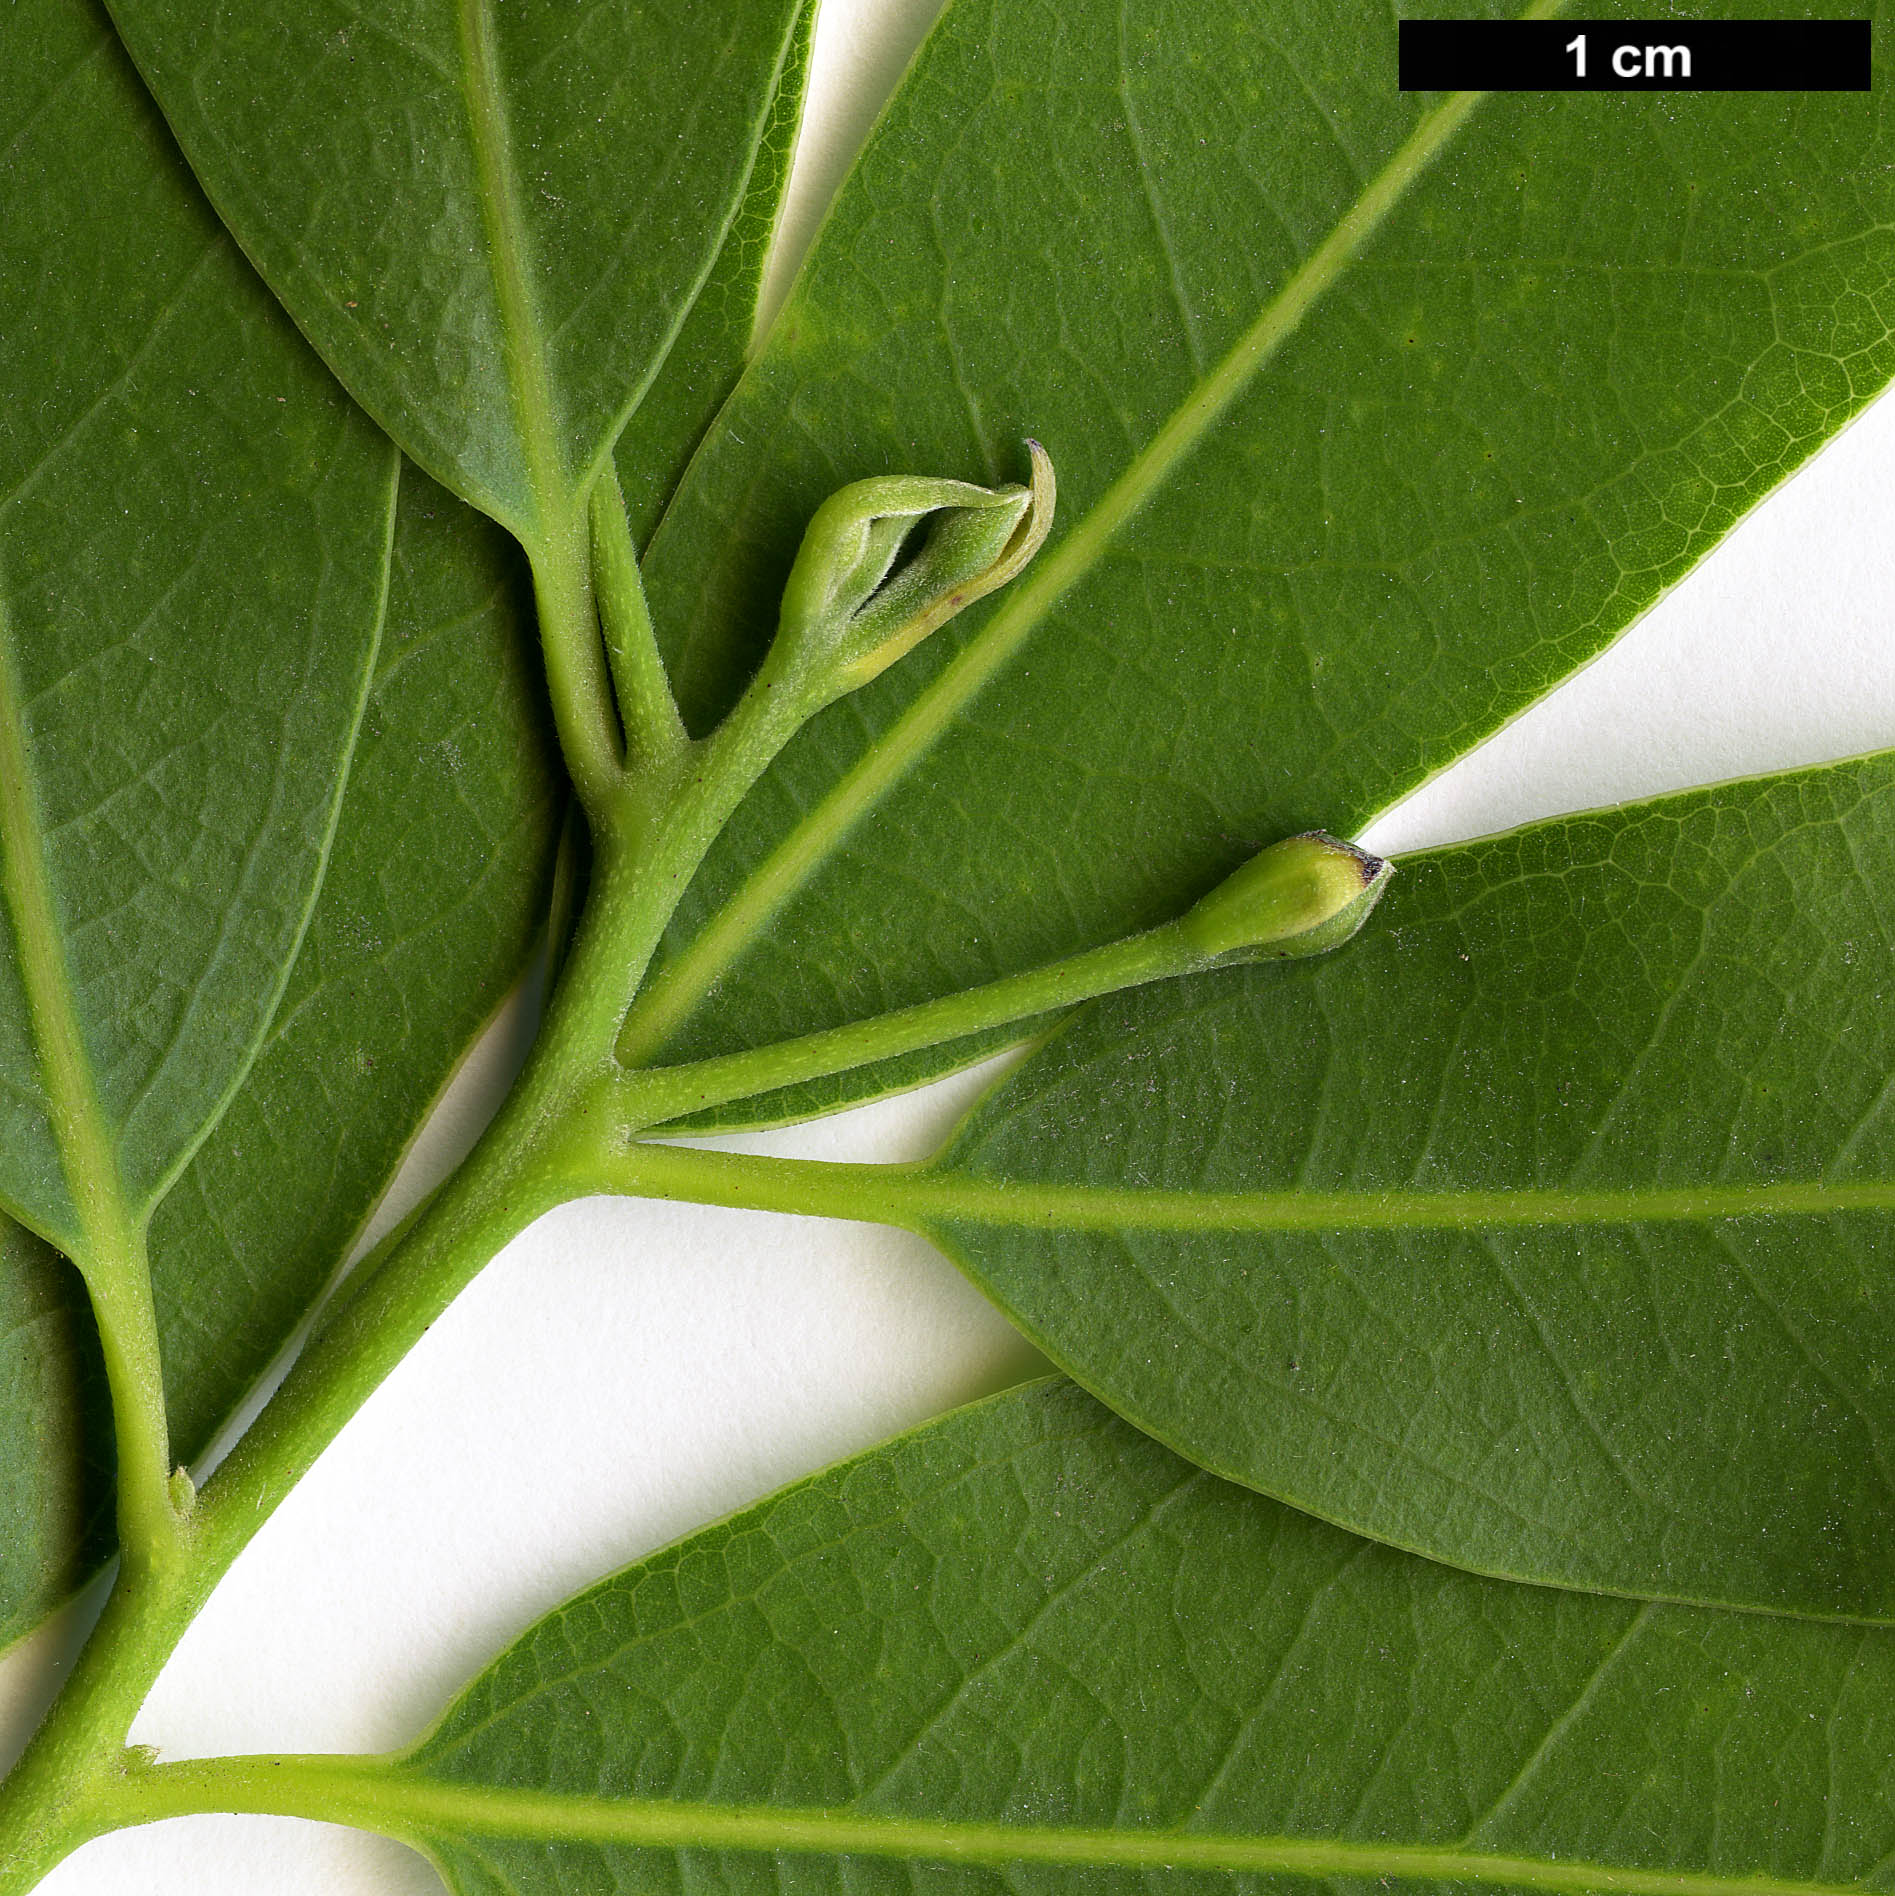 High resolution image: Family: Lauraceae - Genus: Umbellularia - Taxon: californica